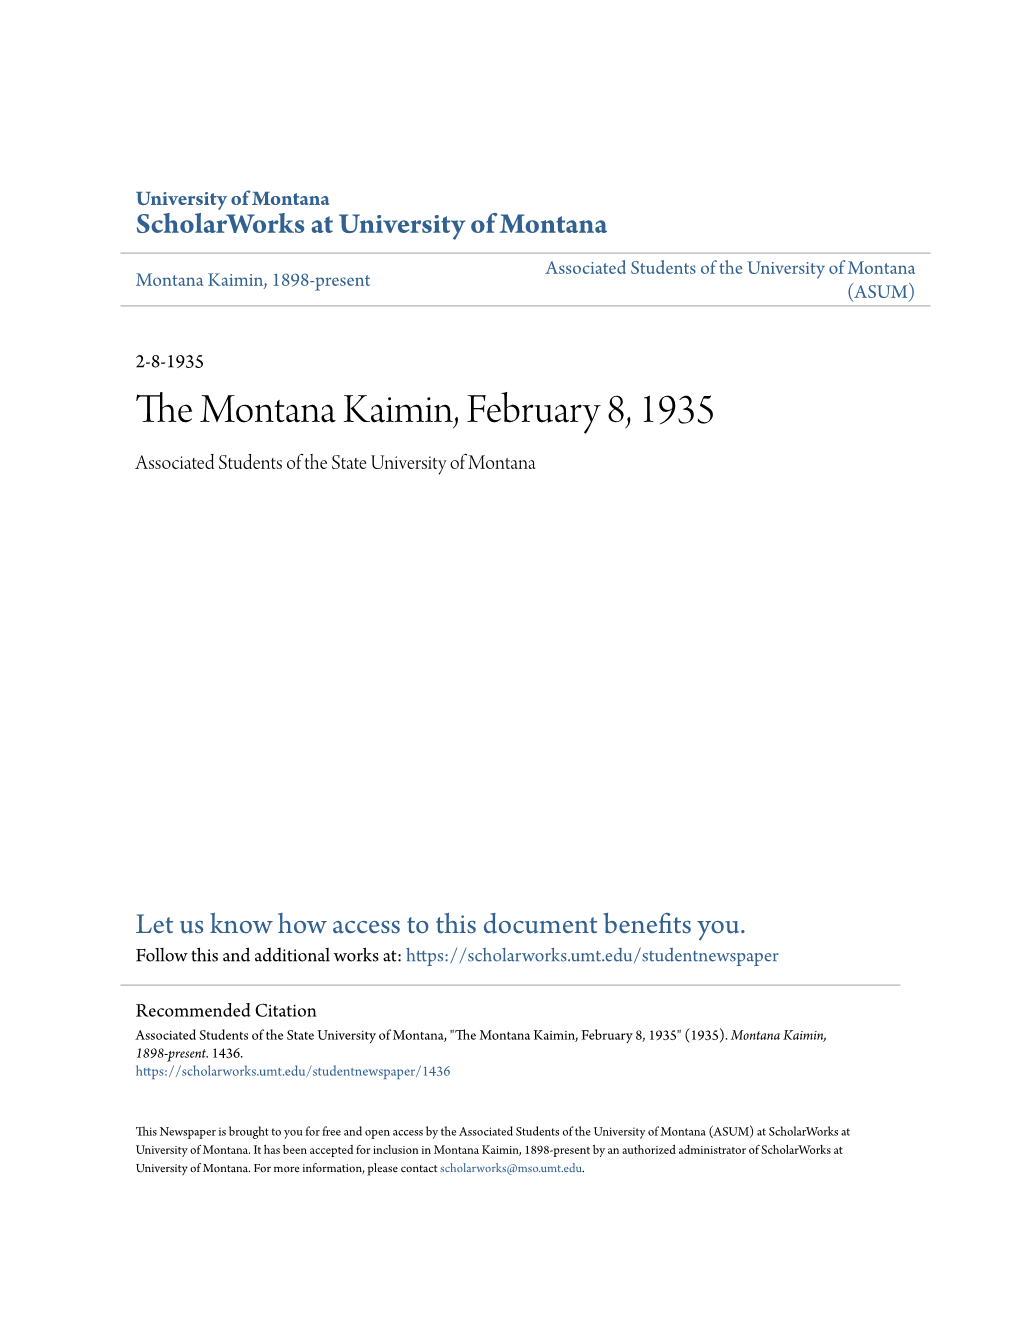 The Montana Kaimin, February 8, 1935